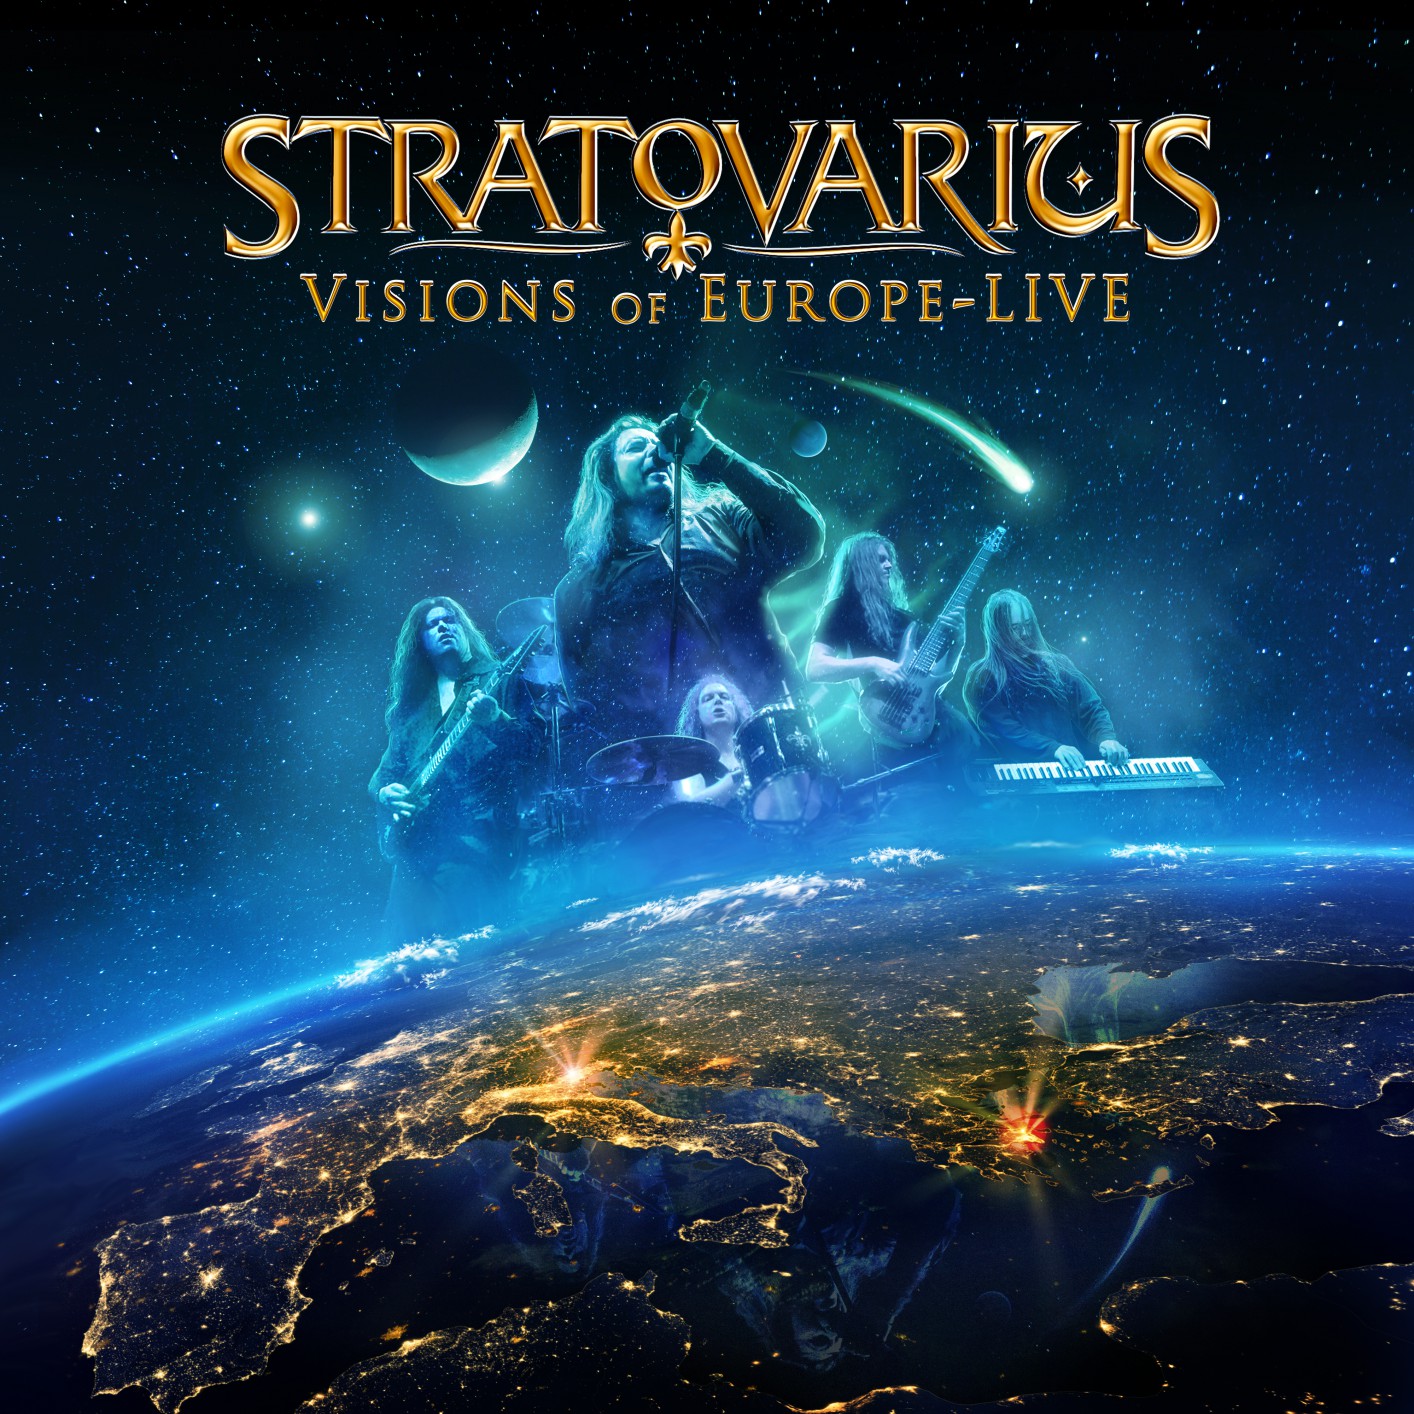 Stratovarius - Discografía completa álbumes